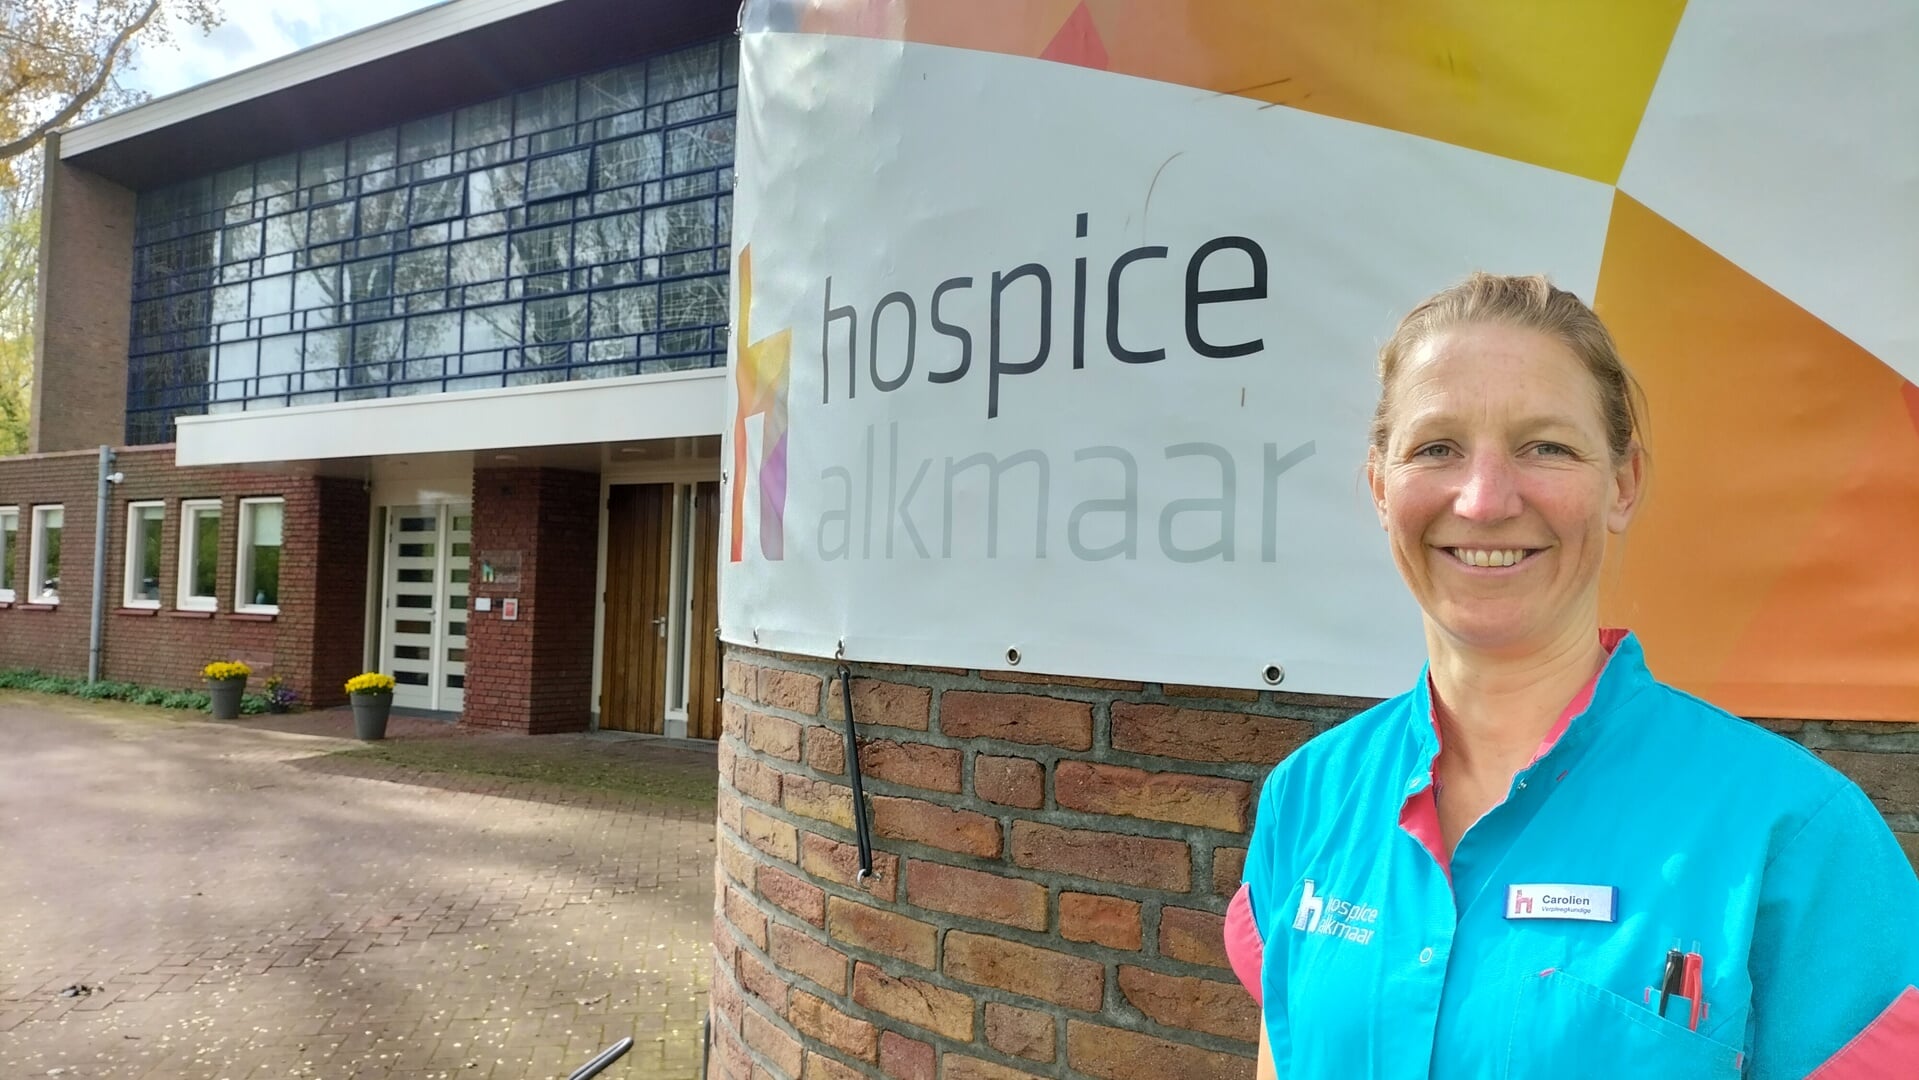 Carolien werkt al 10 jaar als verpleegkundige in het Hospice in Alkmaar